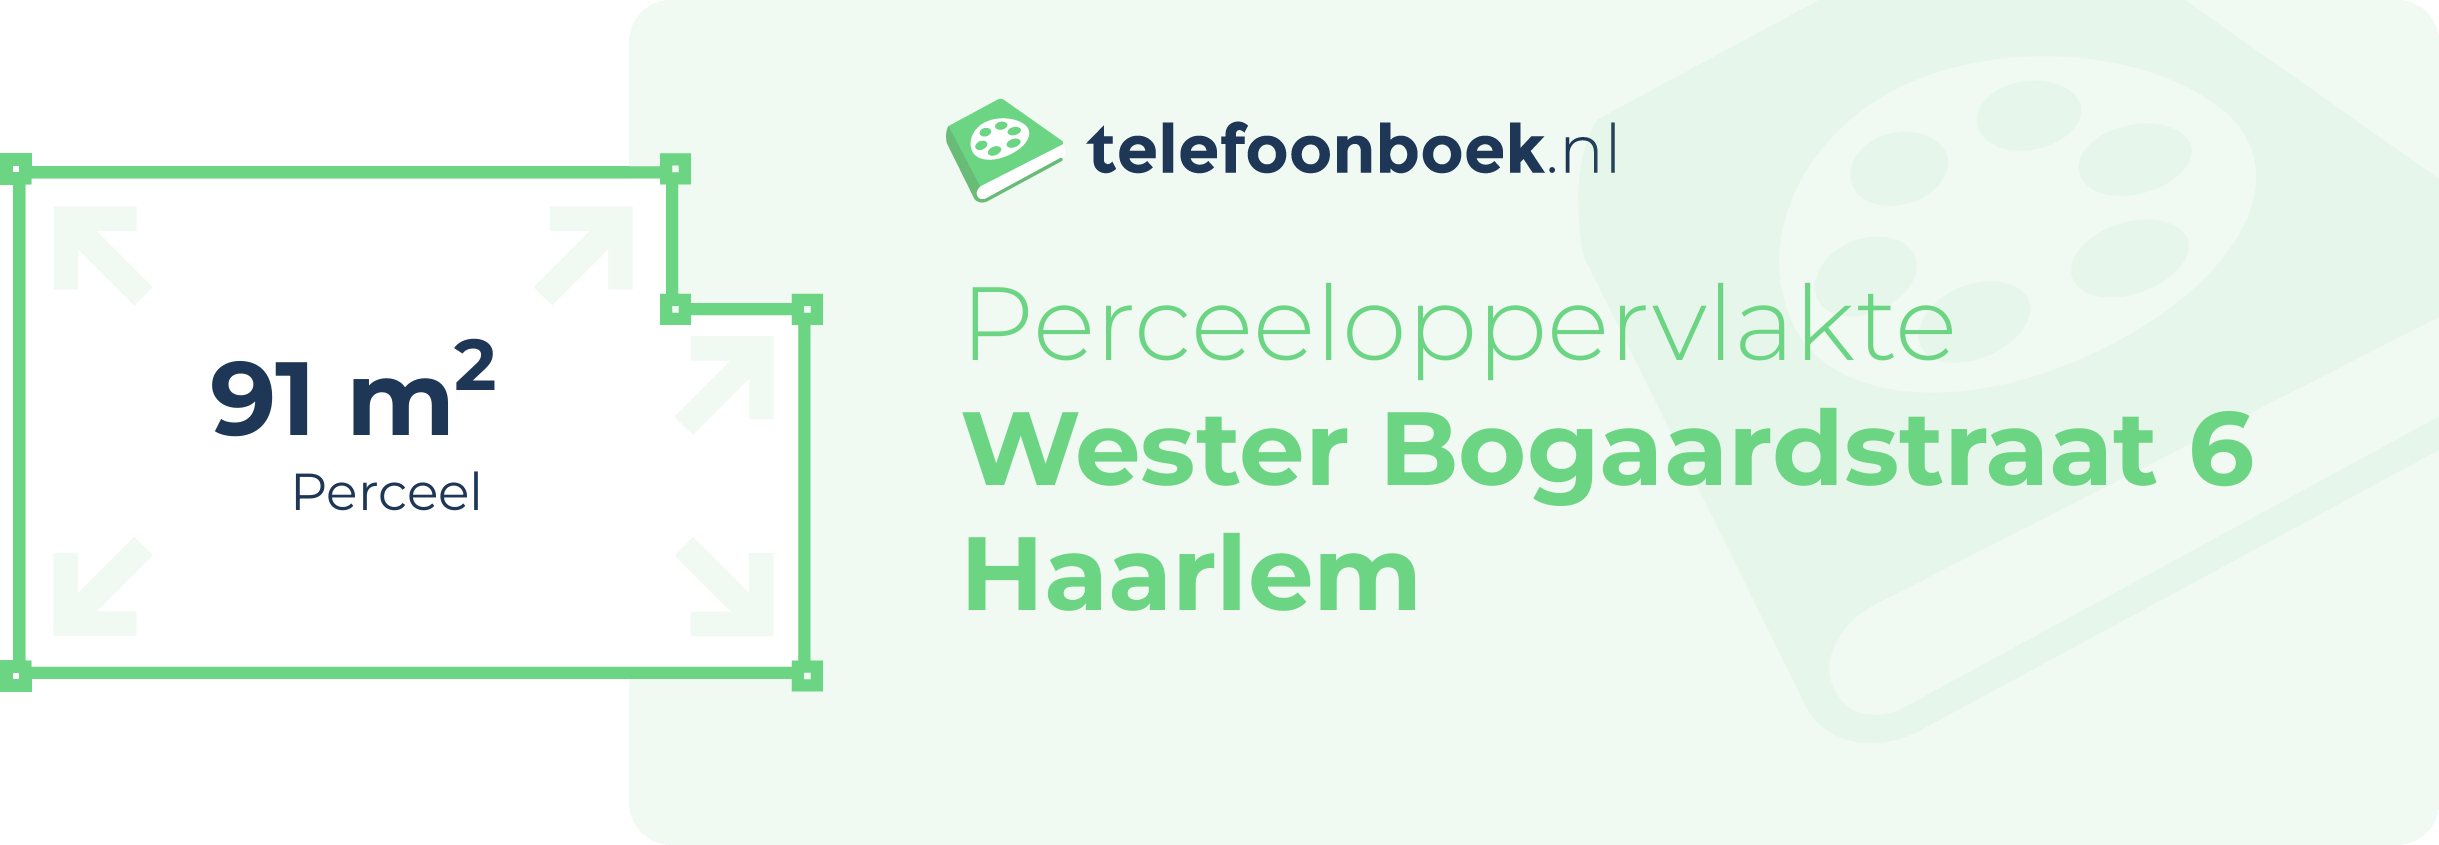 Perceeloppervlakte Wester Bogaardstraat 6 Haarlem